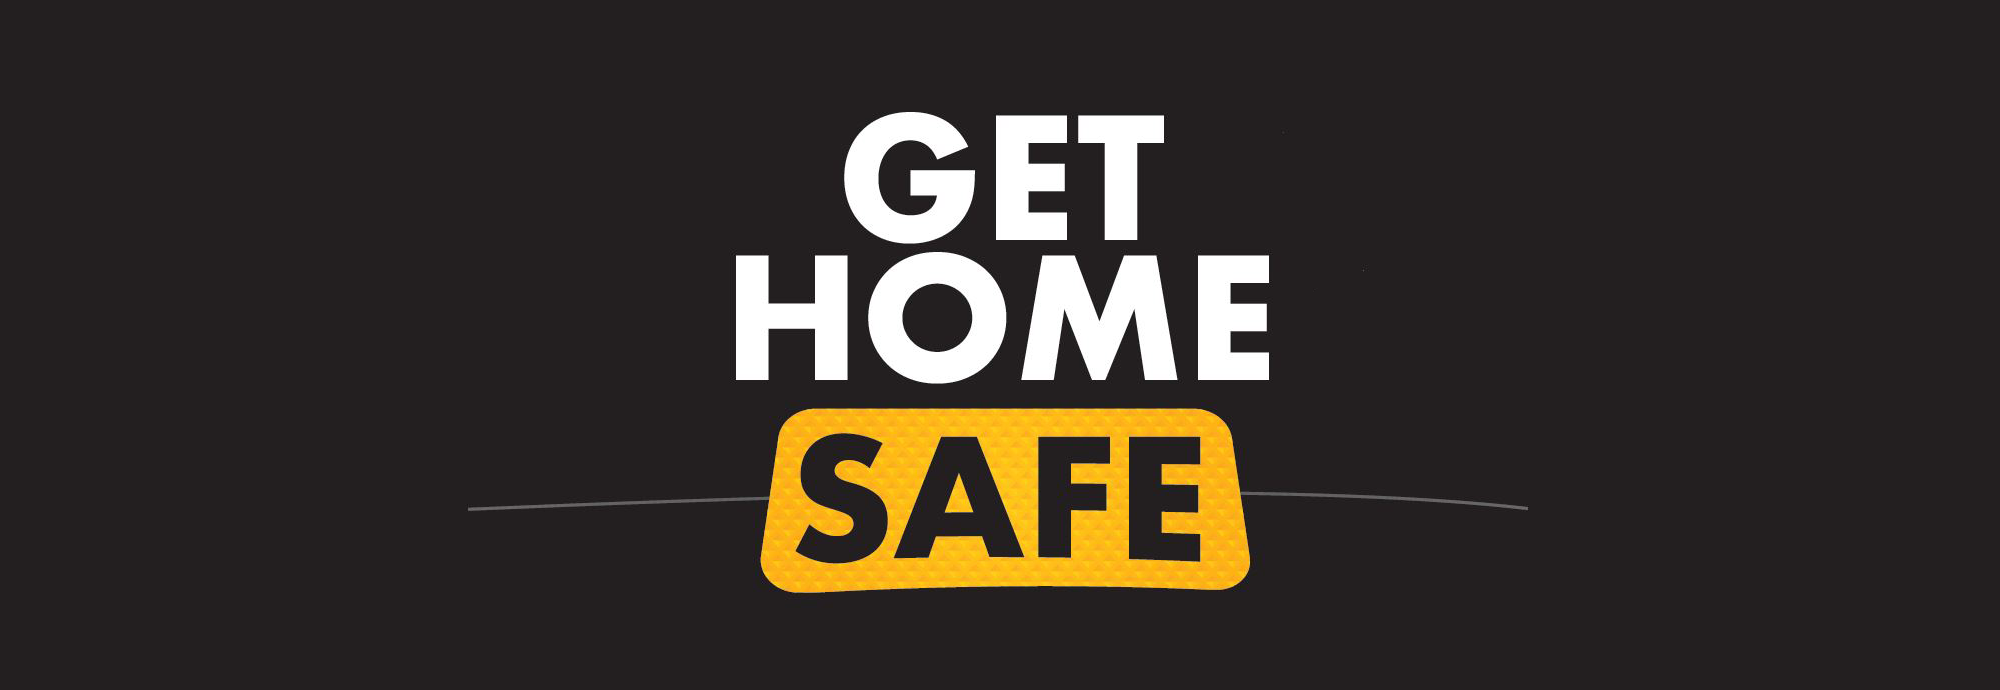 Safe Home Image